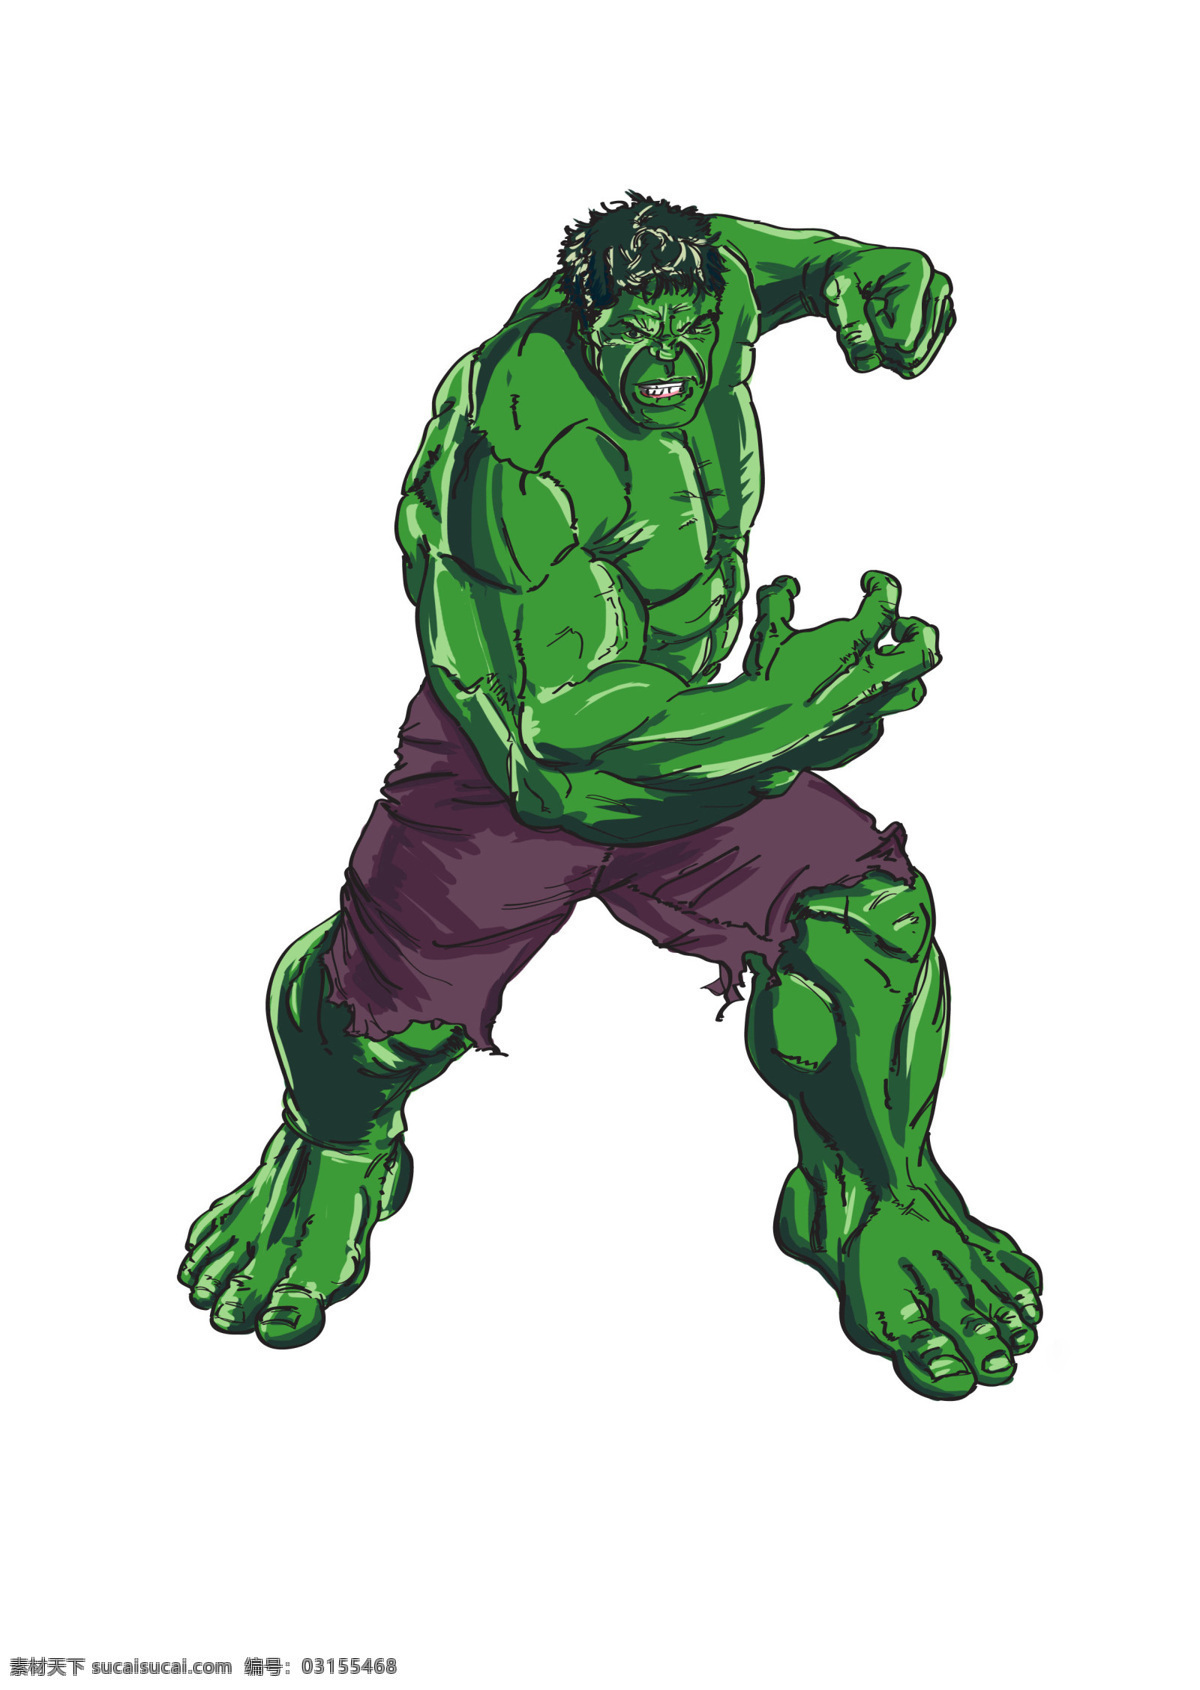 绿巨人 漫画人物 英雄 经典形象 复仇者联盟 动漫人物 动漫动画